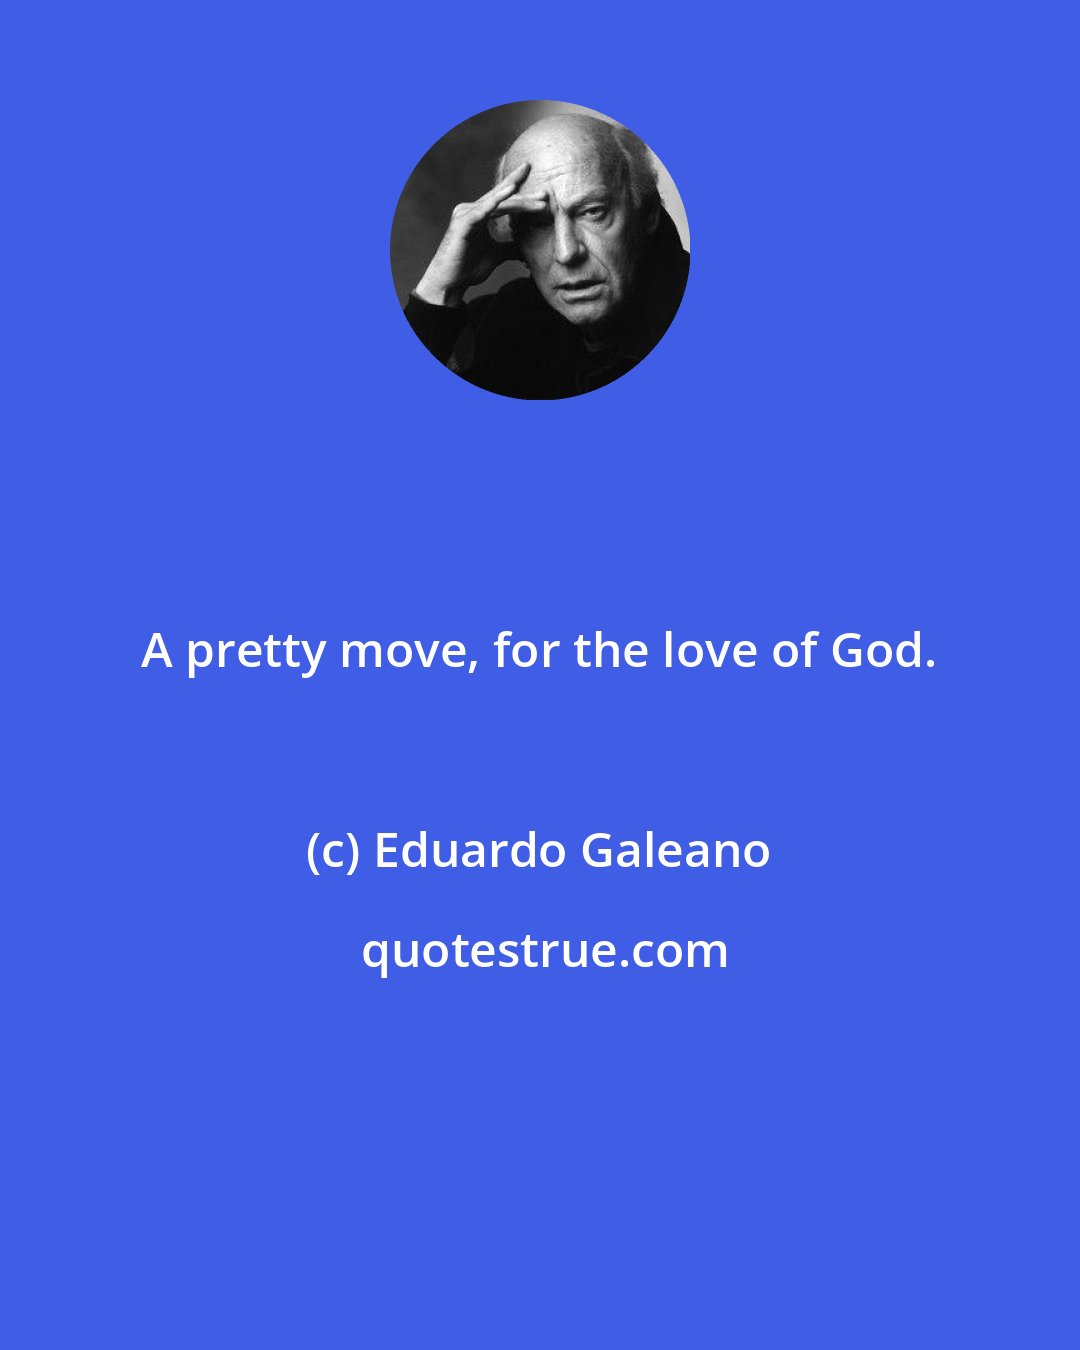 Eduardo Galeano: A pretty move, for the love of God.